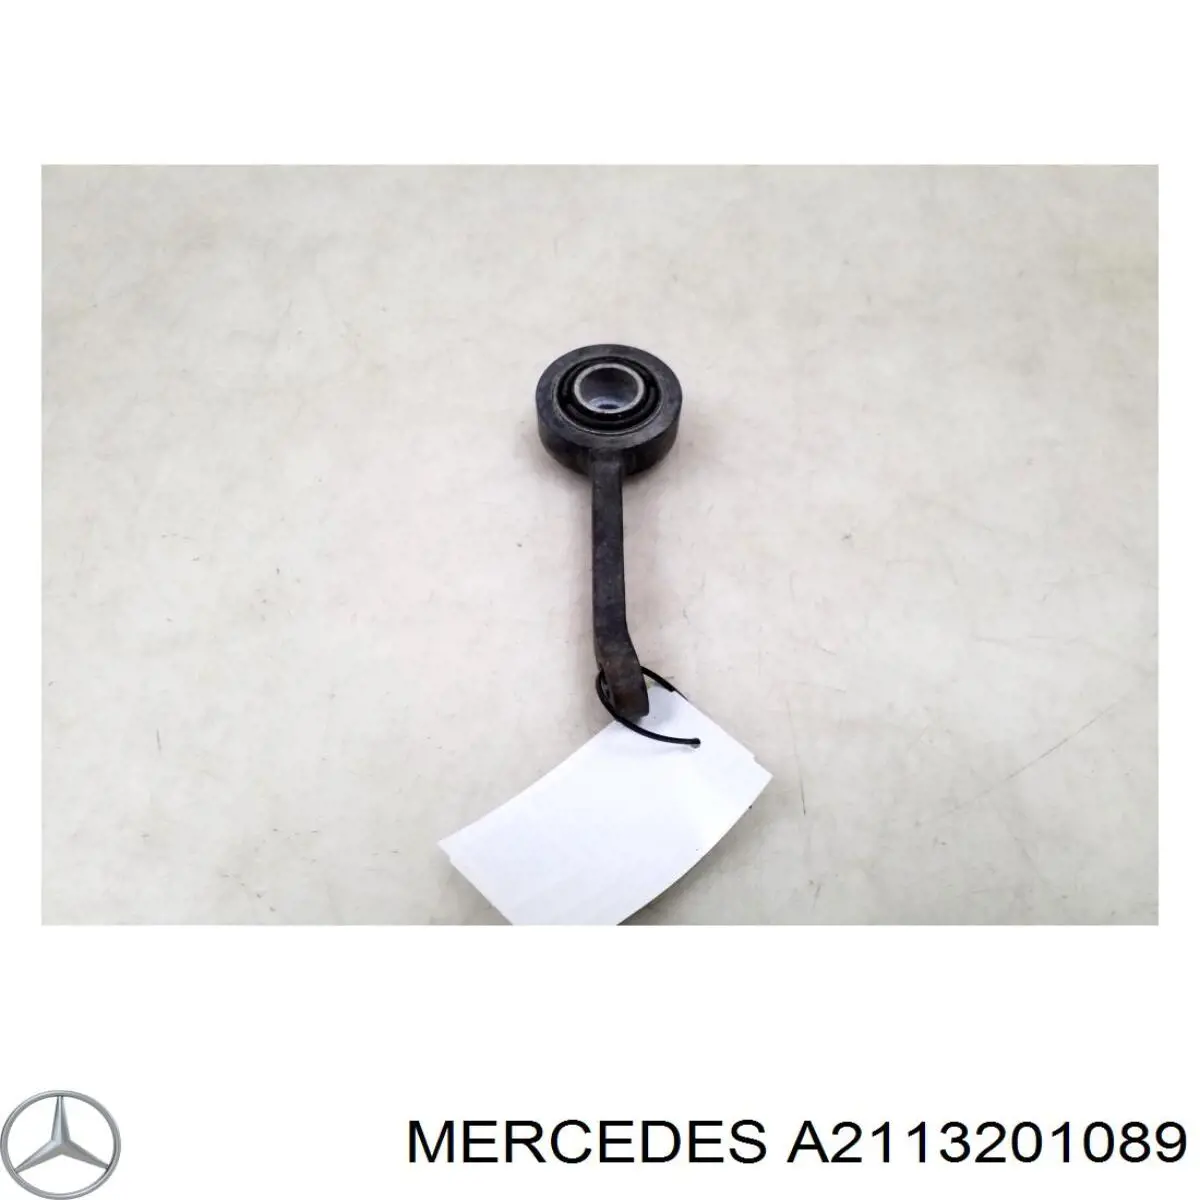 A2113201089 Mercedes barra estabilizadora delantera derecha